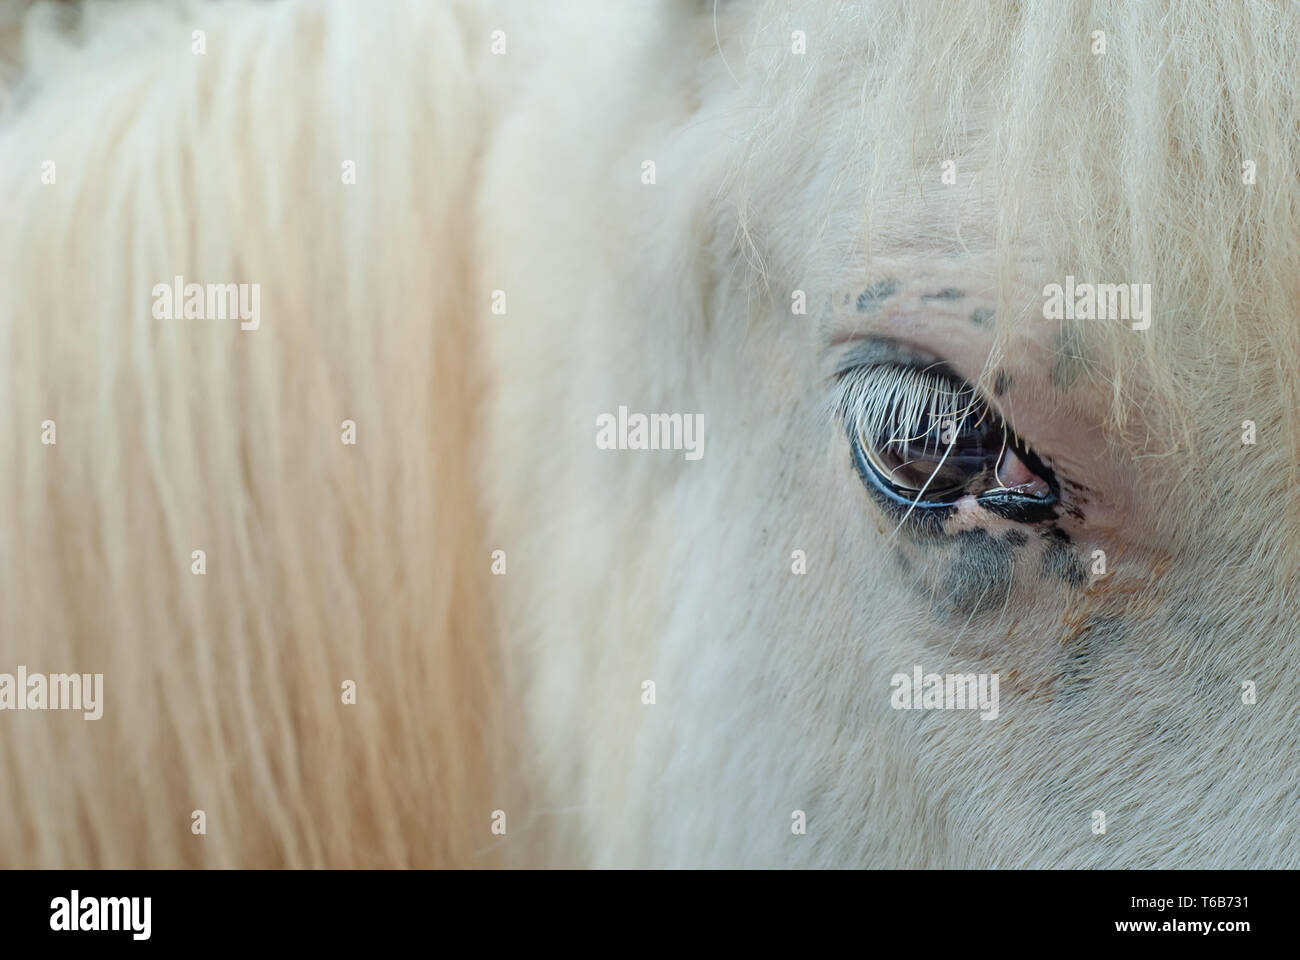 Detalle de los ojos de un joven caballo piel blanca y dorada Foto de stock